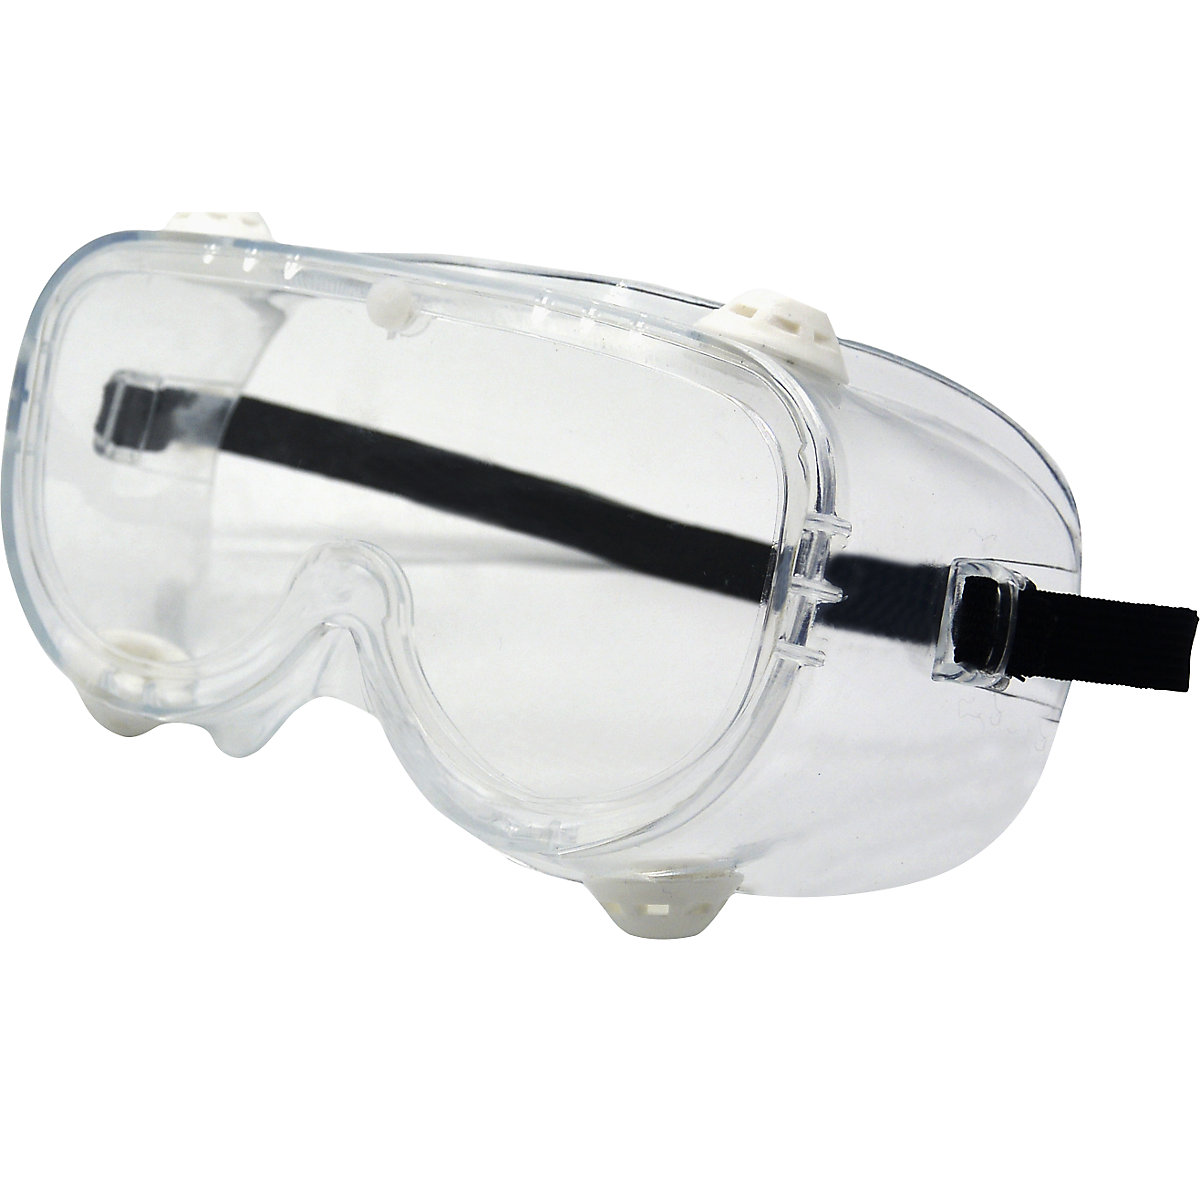 Zaščitna očala s širokim vidnim poljem, EN 166 (DE 10 ali 200 kosov)